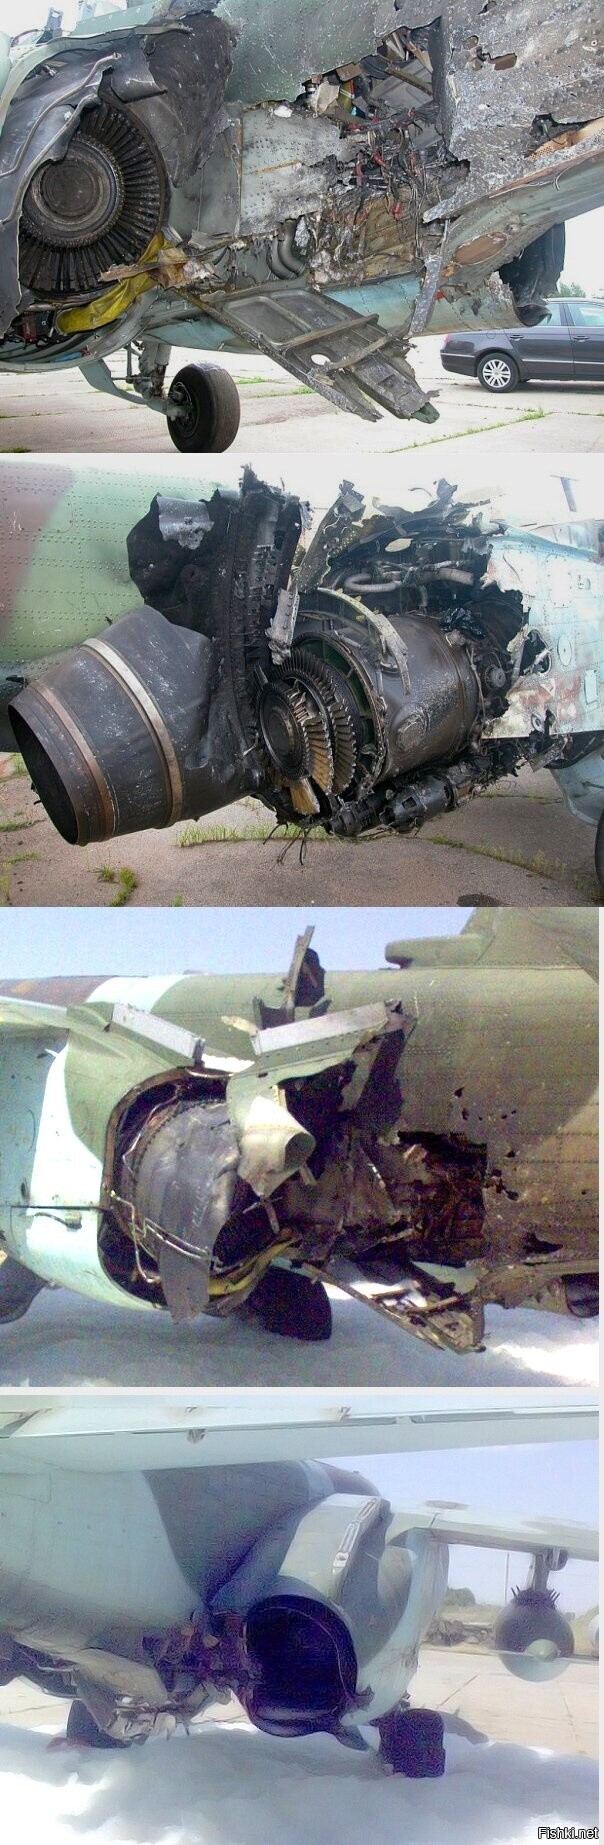 Су-25 сохранил управляемость и возможность лететь на одном двигателе